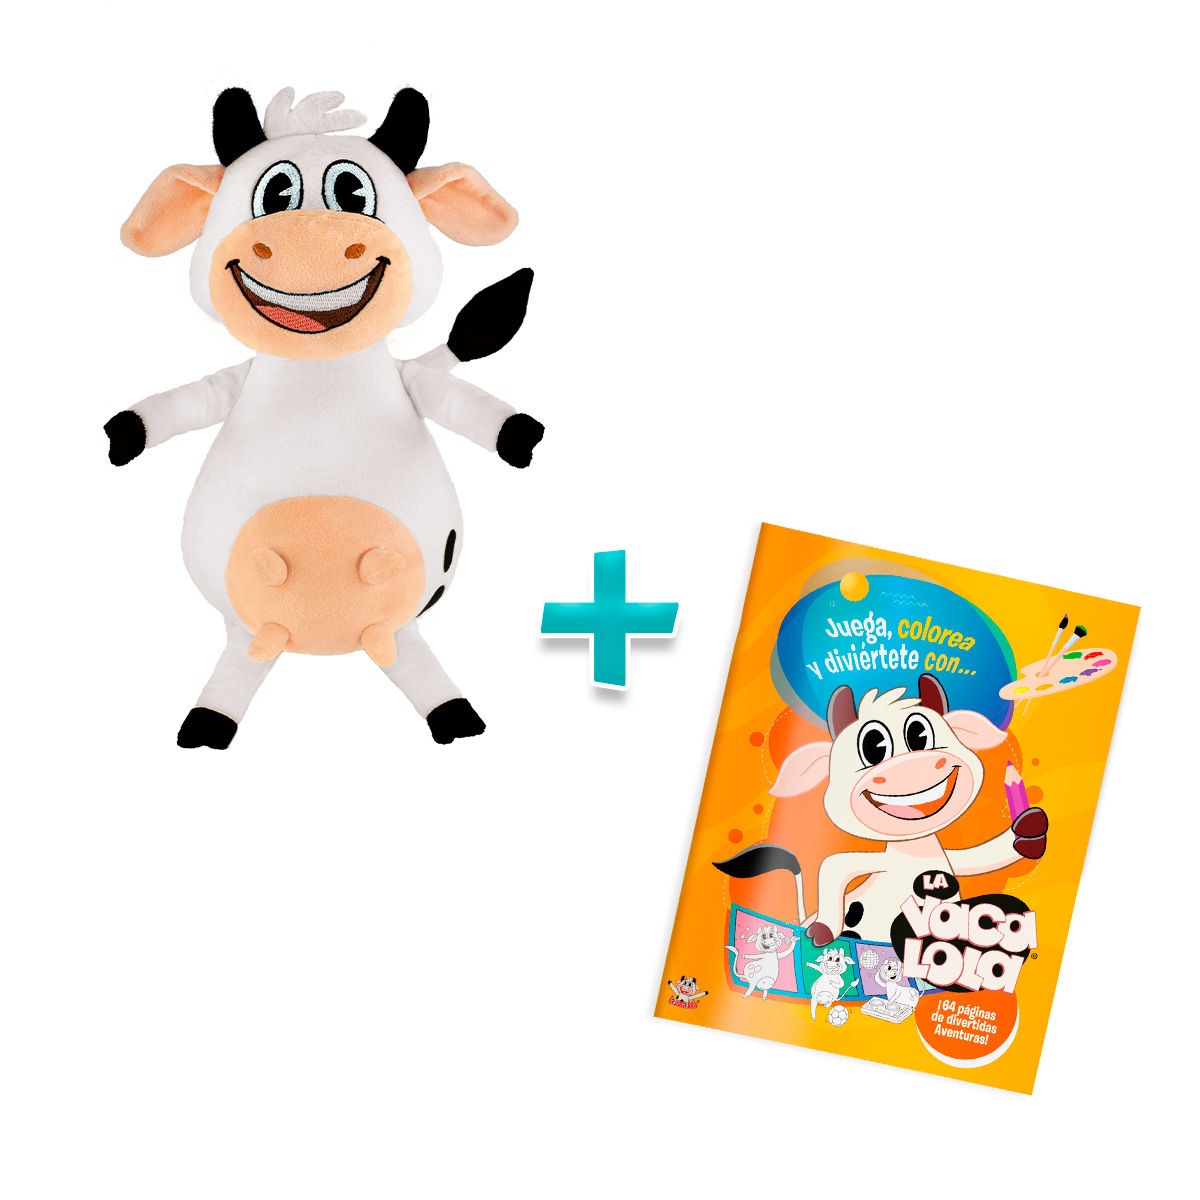 Libros archivos - Página 2 de 3 - Toy Cantando canciones infantiles - La  Vaca Lola